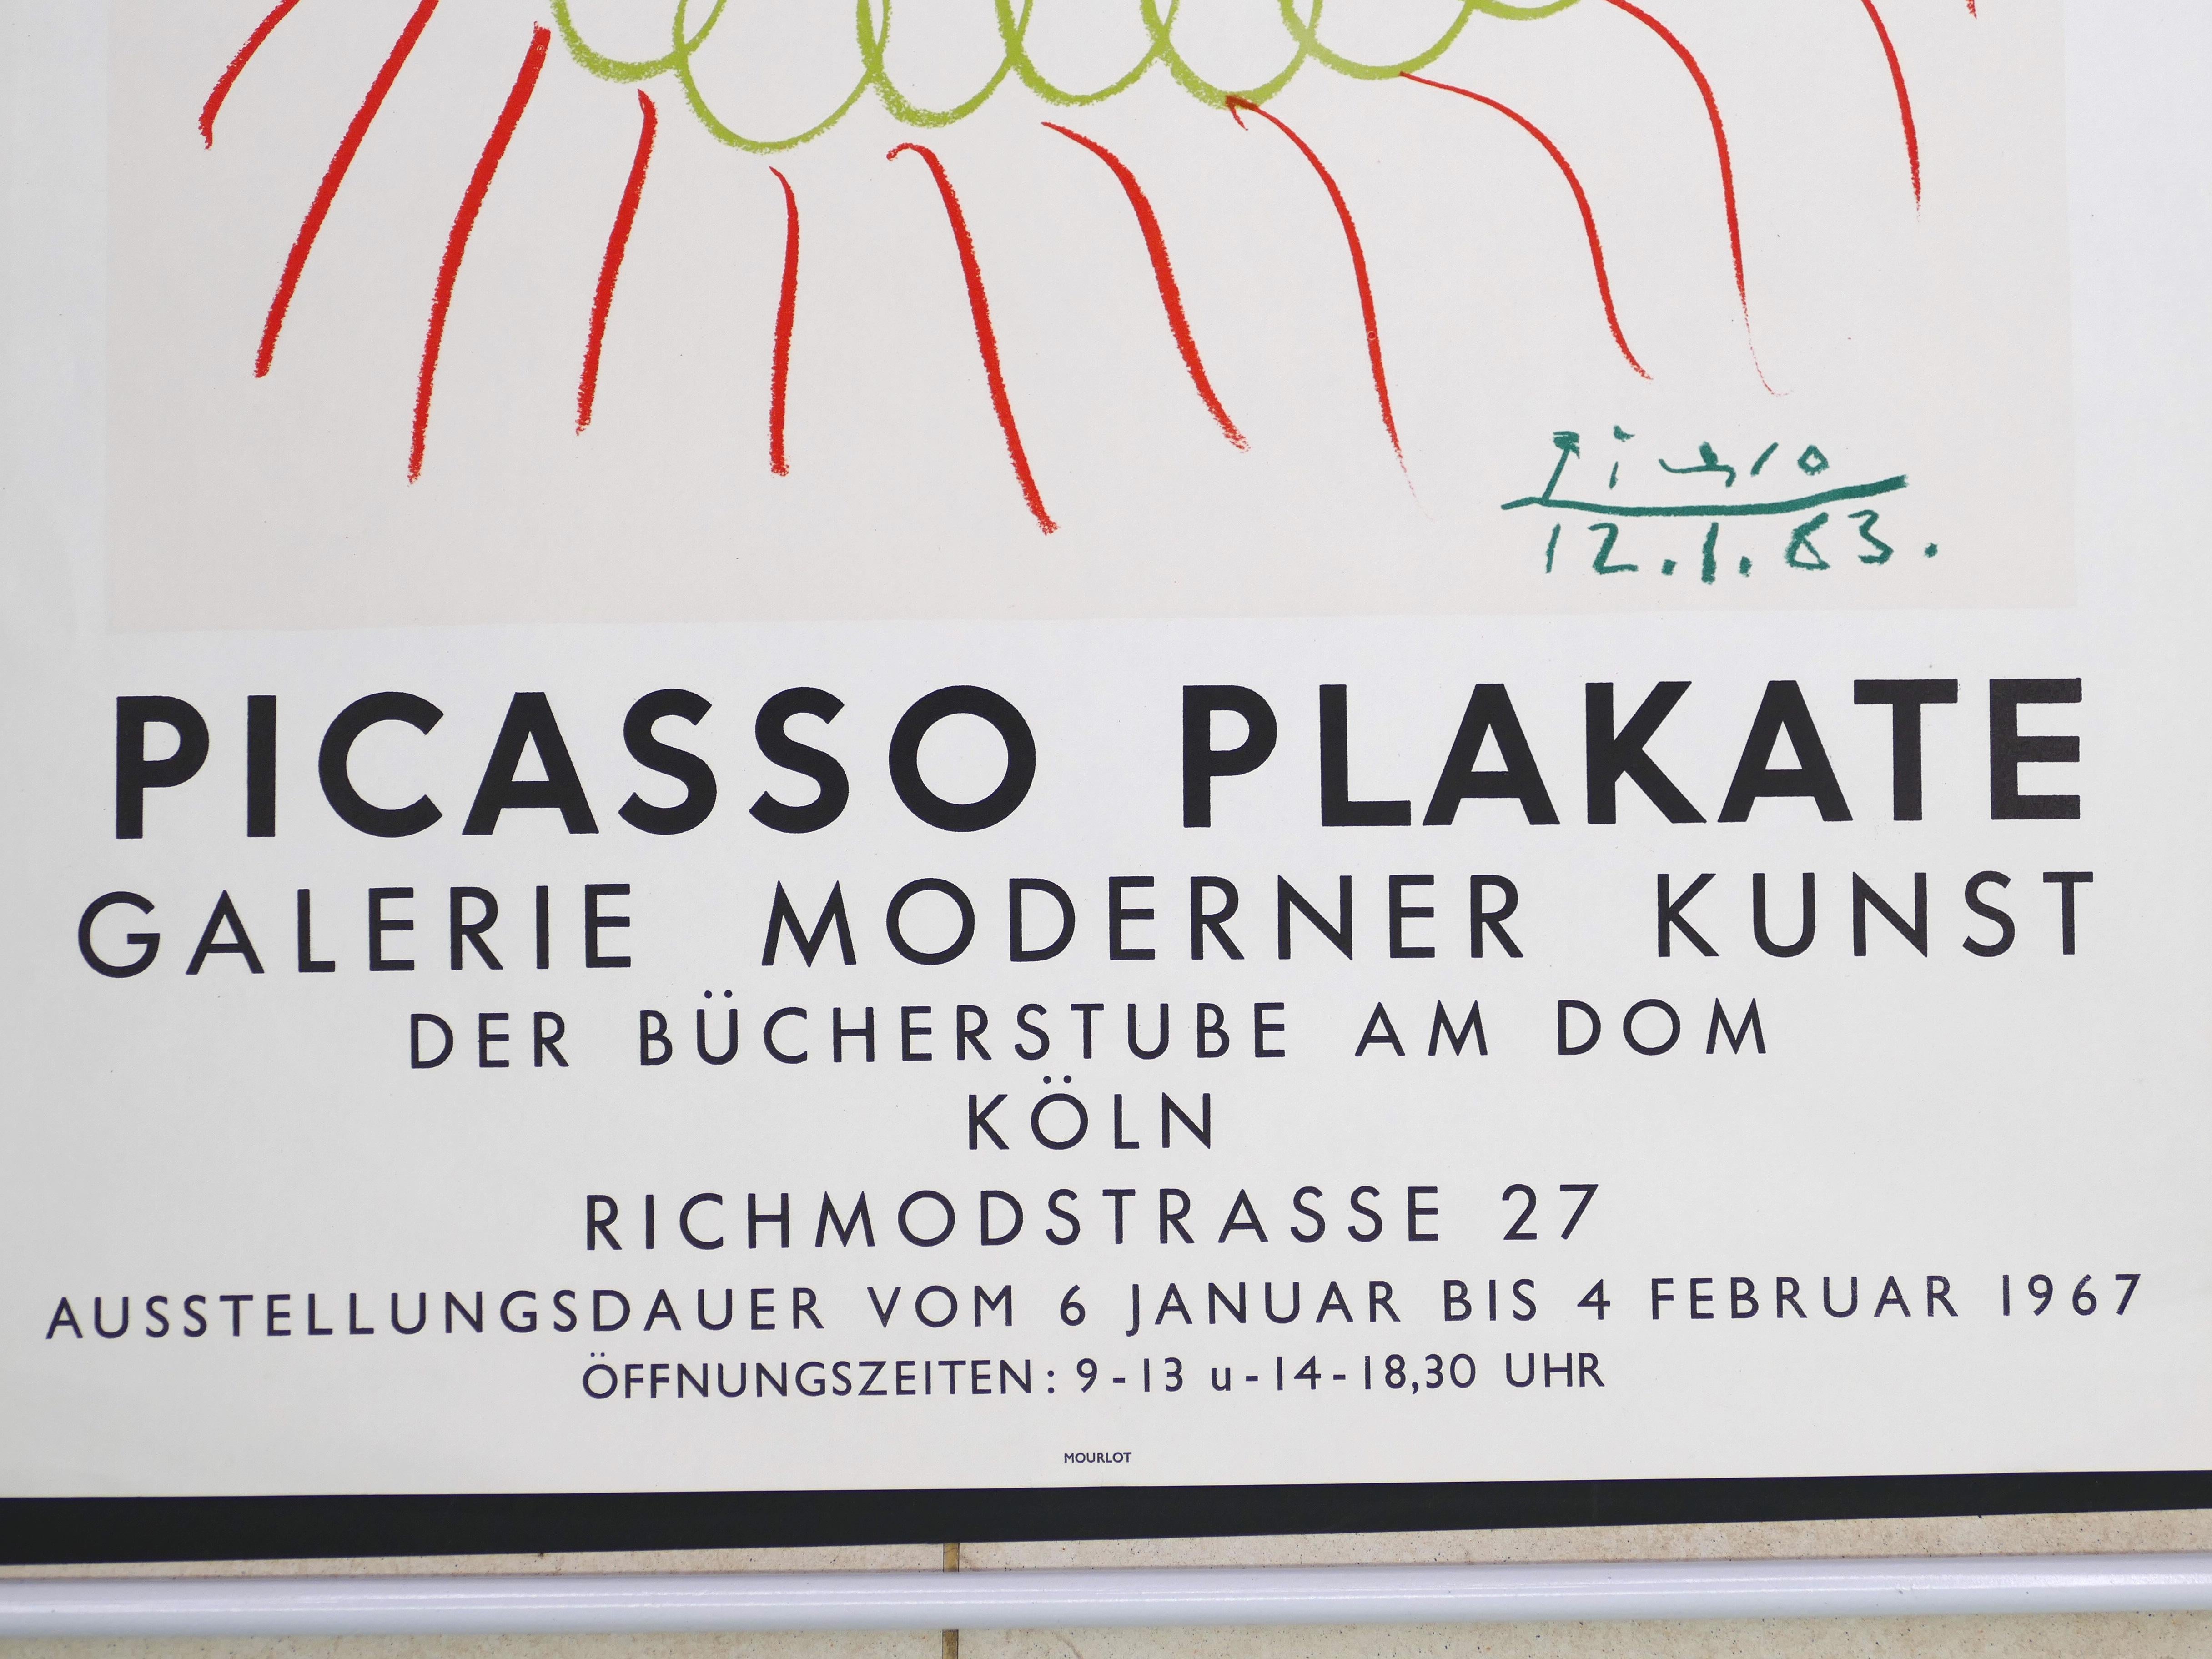 Picasso Vintage Poster Galerie Moderner Kunst der Bücherstube, Köln - 1967 - Print by (after) Pablo Picasso